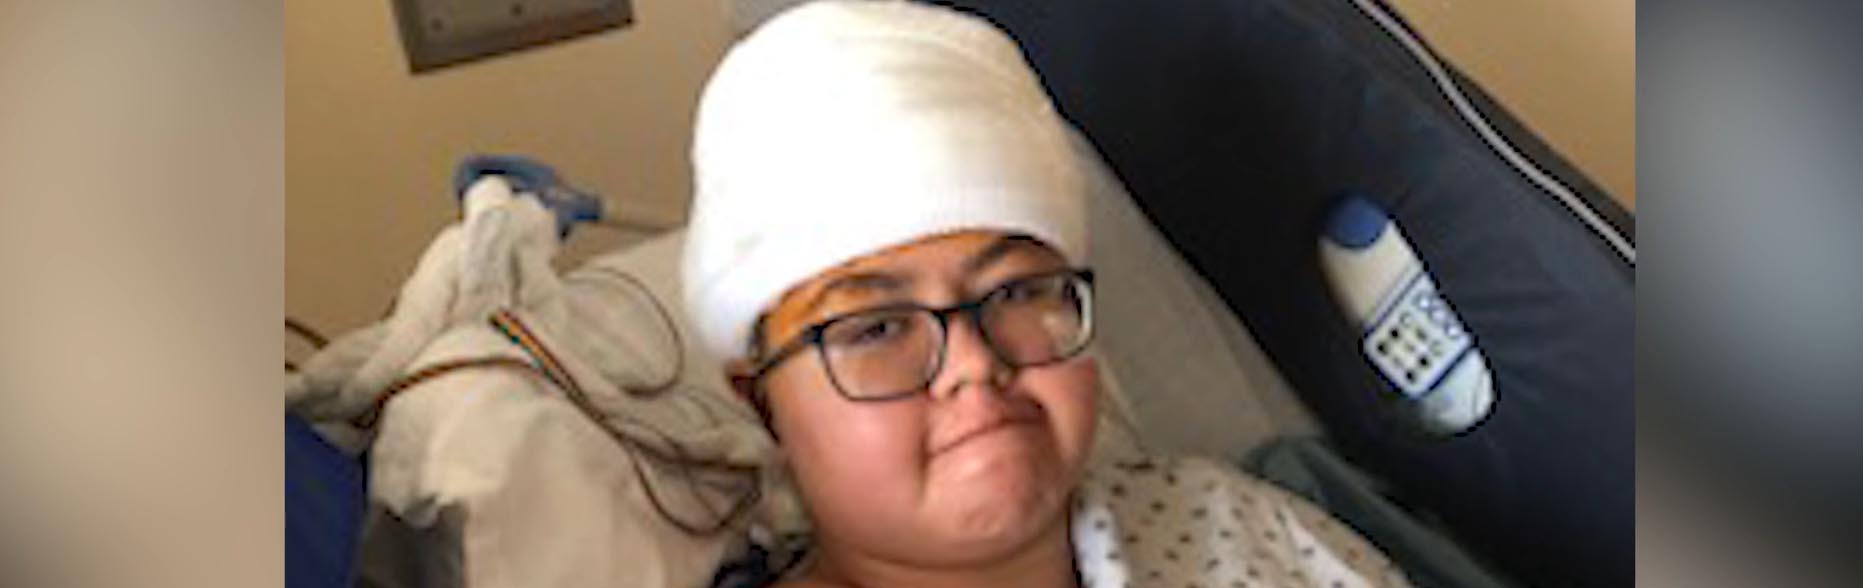 ניז'וני בגאי במיטת בית חולים עם עוטפות על ראשה